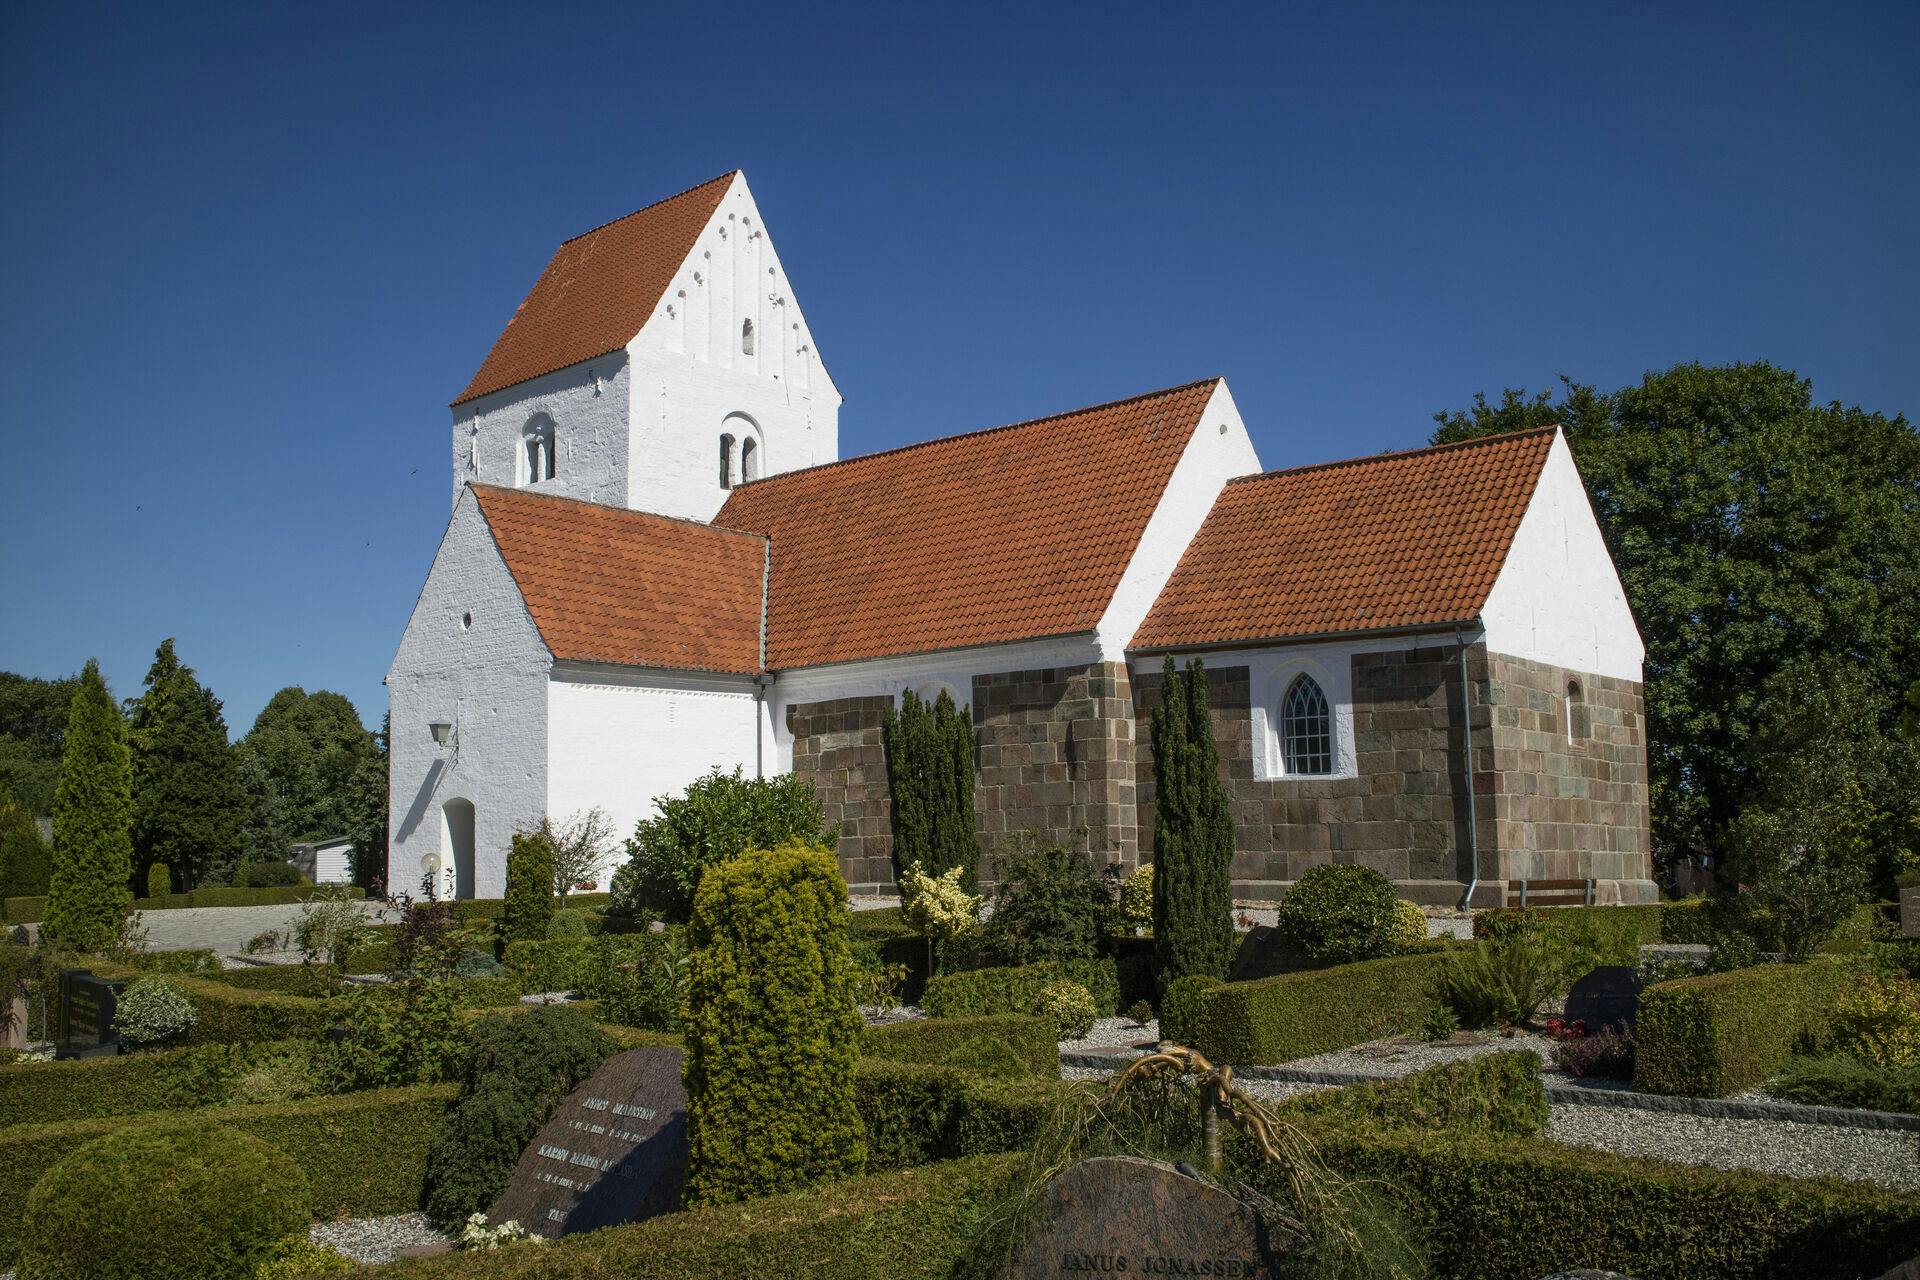 Kaldes også Ejstrupholm Kirke. Skib og kor er romanske, formentlig fra første halvdel af 1100-tallet. Tårn, våbenhus og korsarm blev tilføjet senere. Sidstnævnte var den sidste tilføjelse og kom til i 1626.